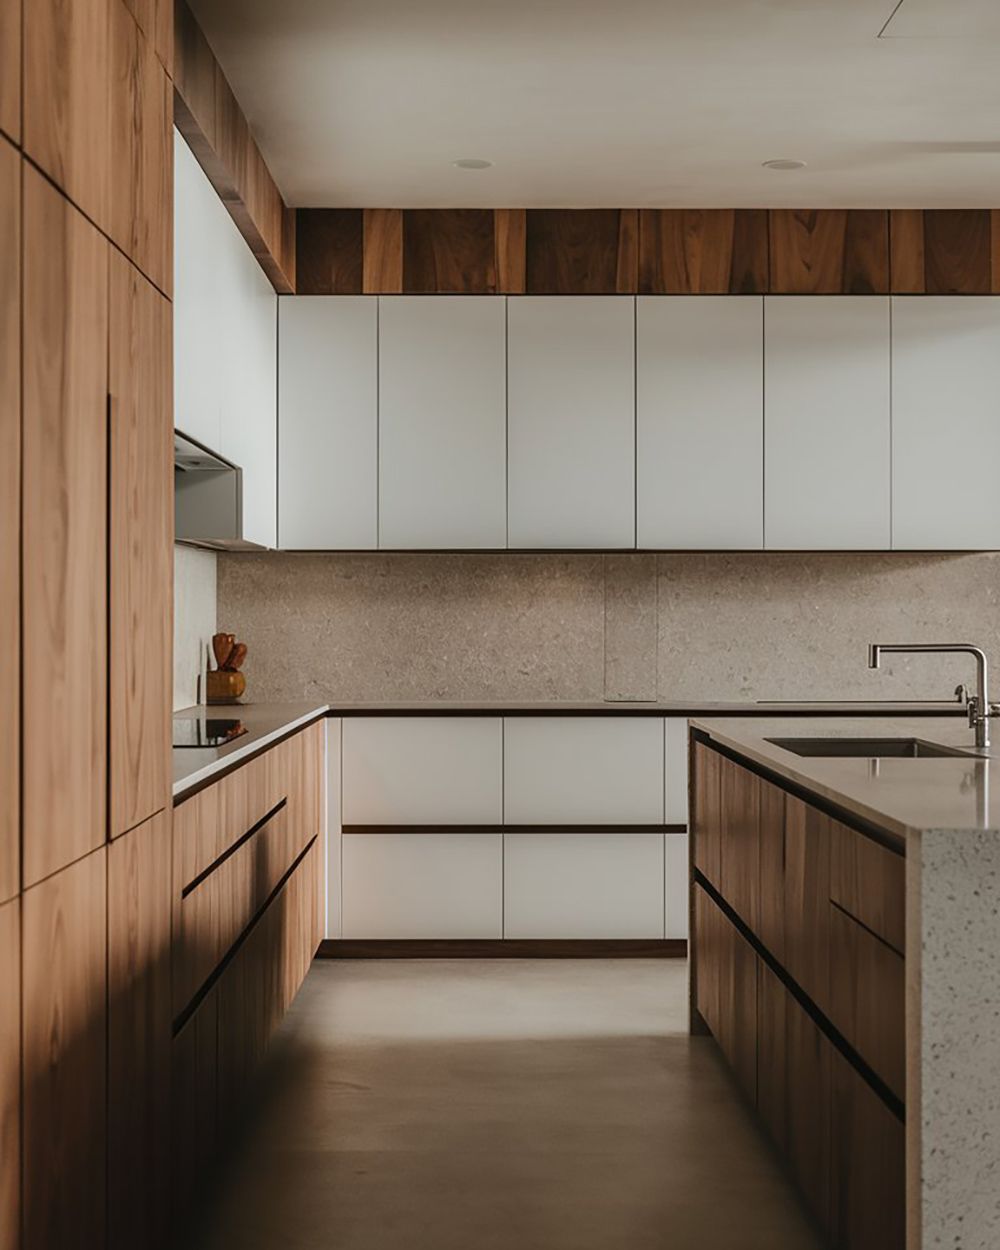 Σύγχρονη κουζίνα λευκή λάκα με ξύλο, με έπιπλα κουζίνας που προσφέρουν λειτουργικότητα και ζεστασιά, δημιουργώντας έναν κομψό και άνετο χώρο.